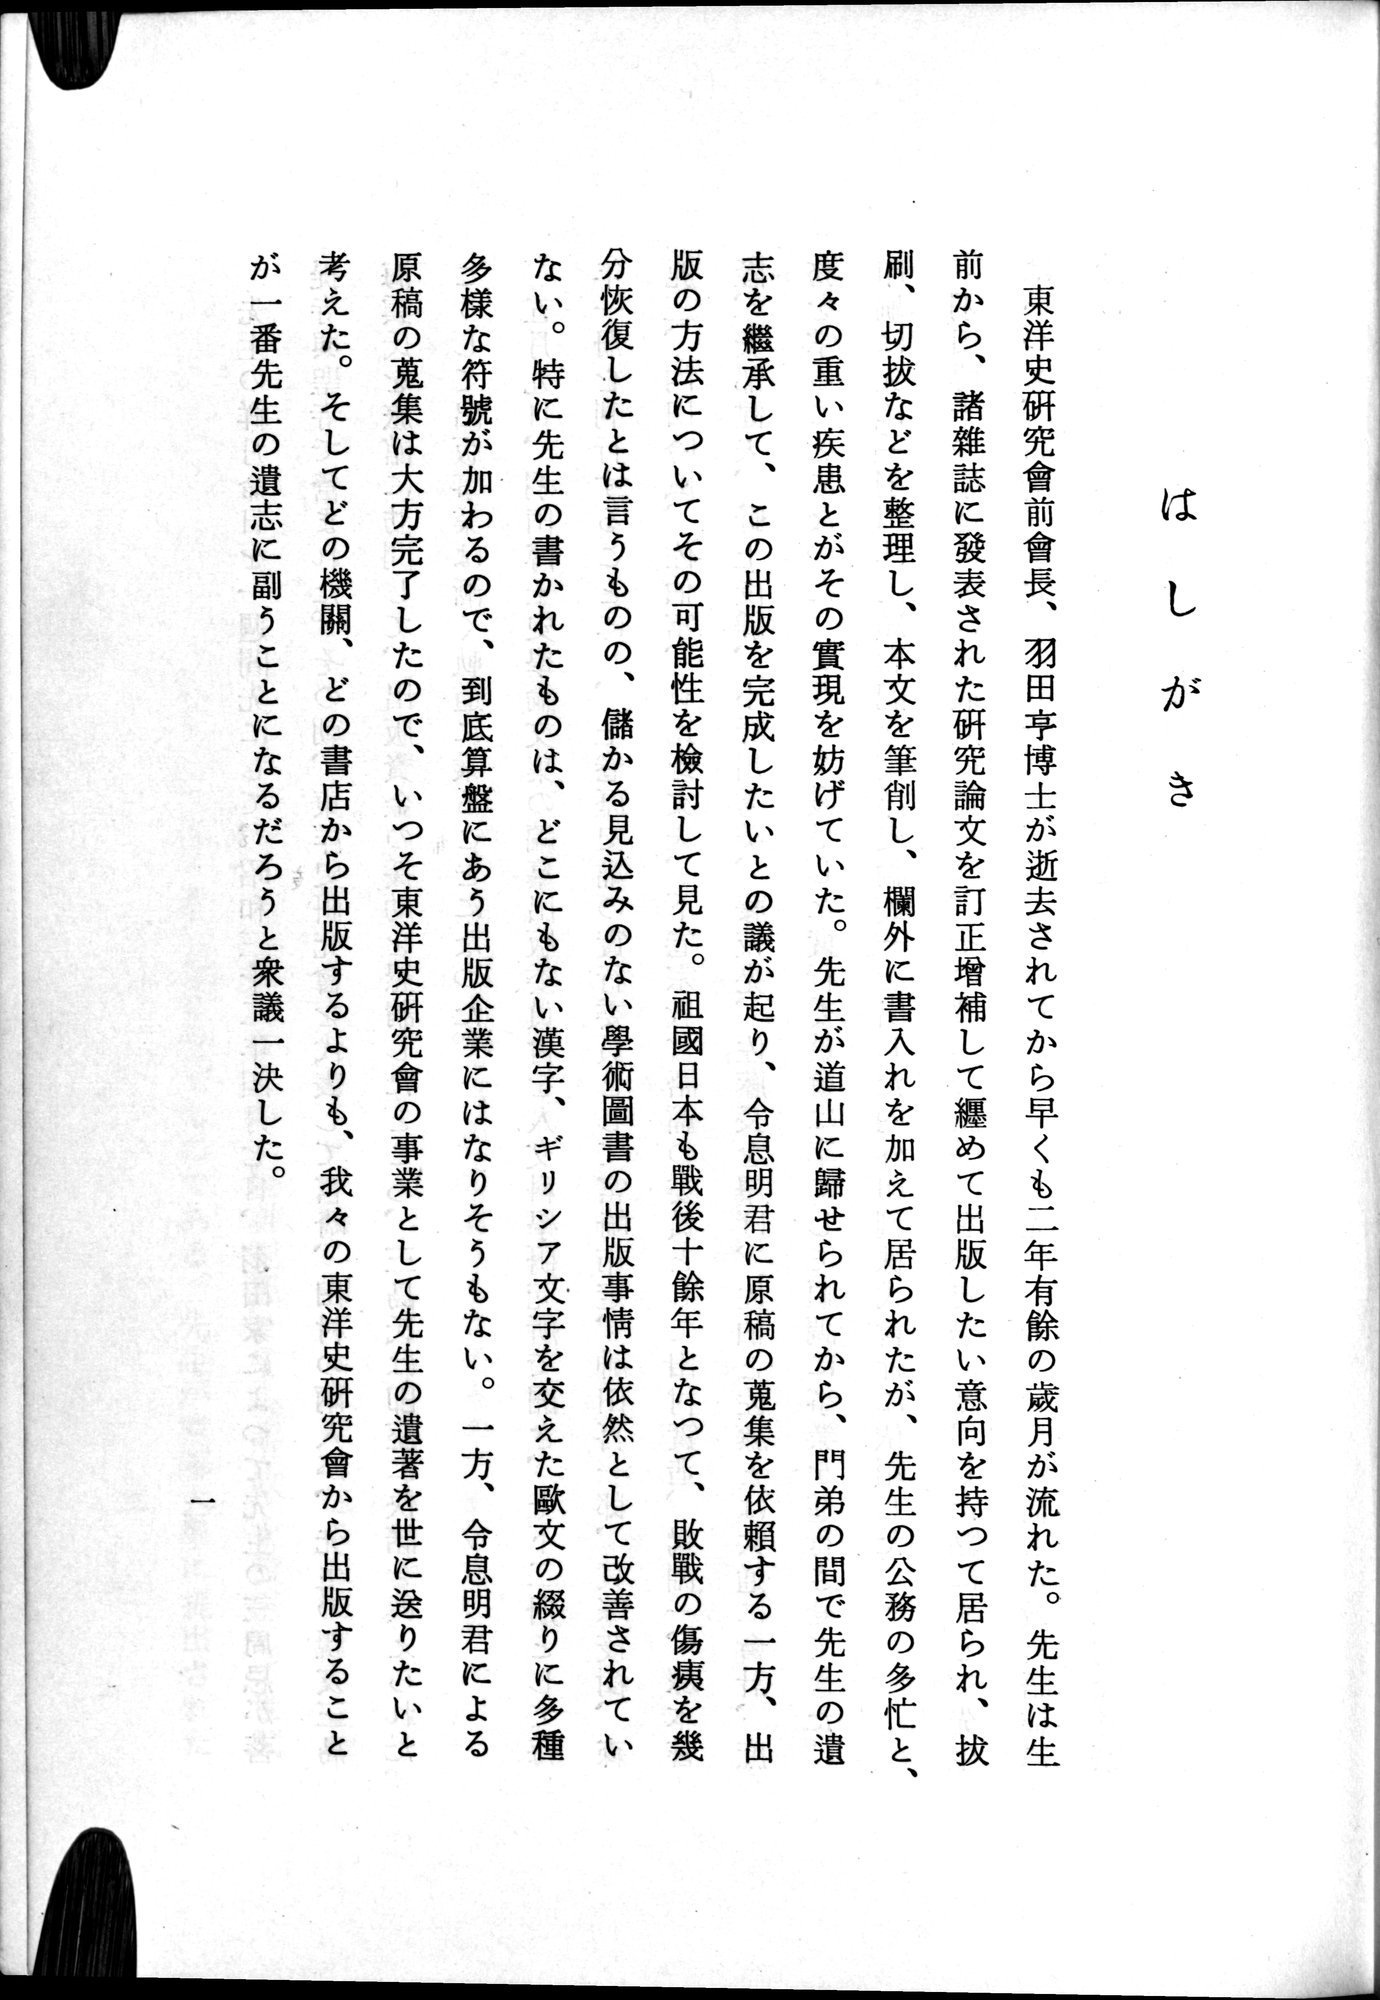 羽田博士史学論文集 : vol.1 / Page 23 (Grayscale High Resolution Image)